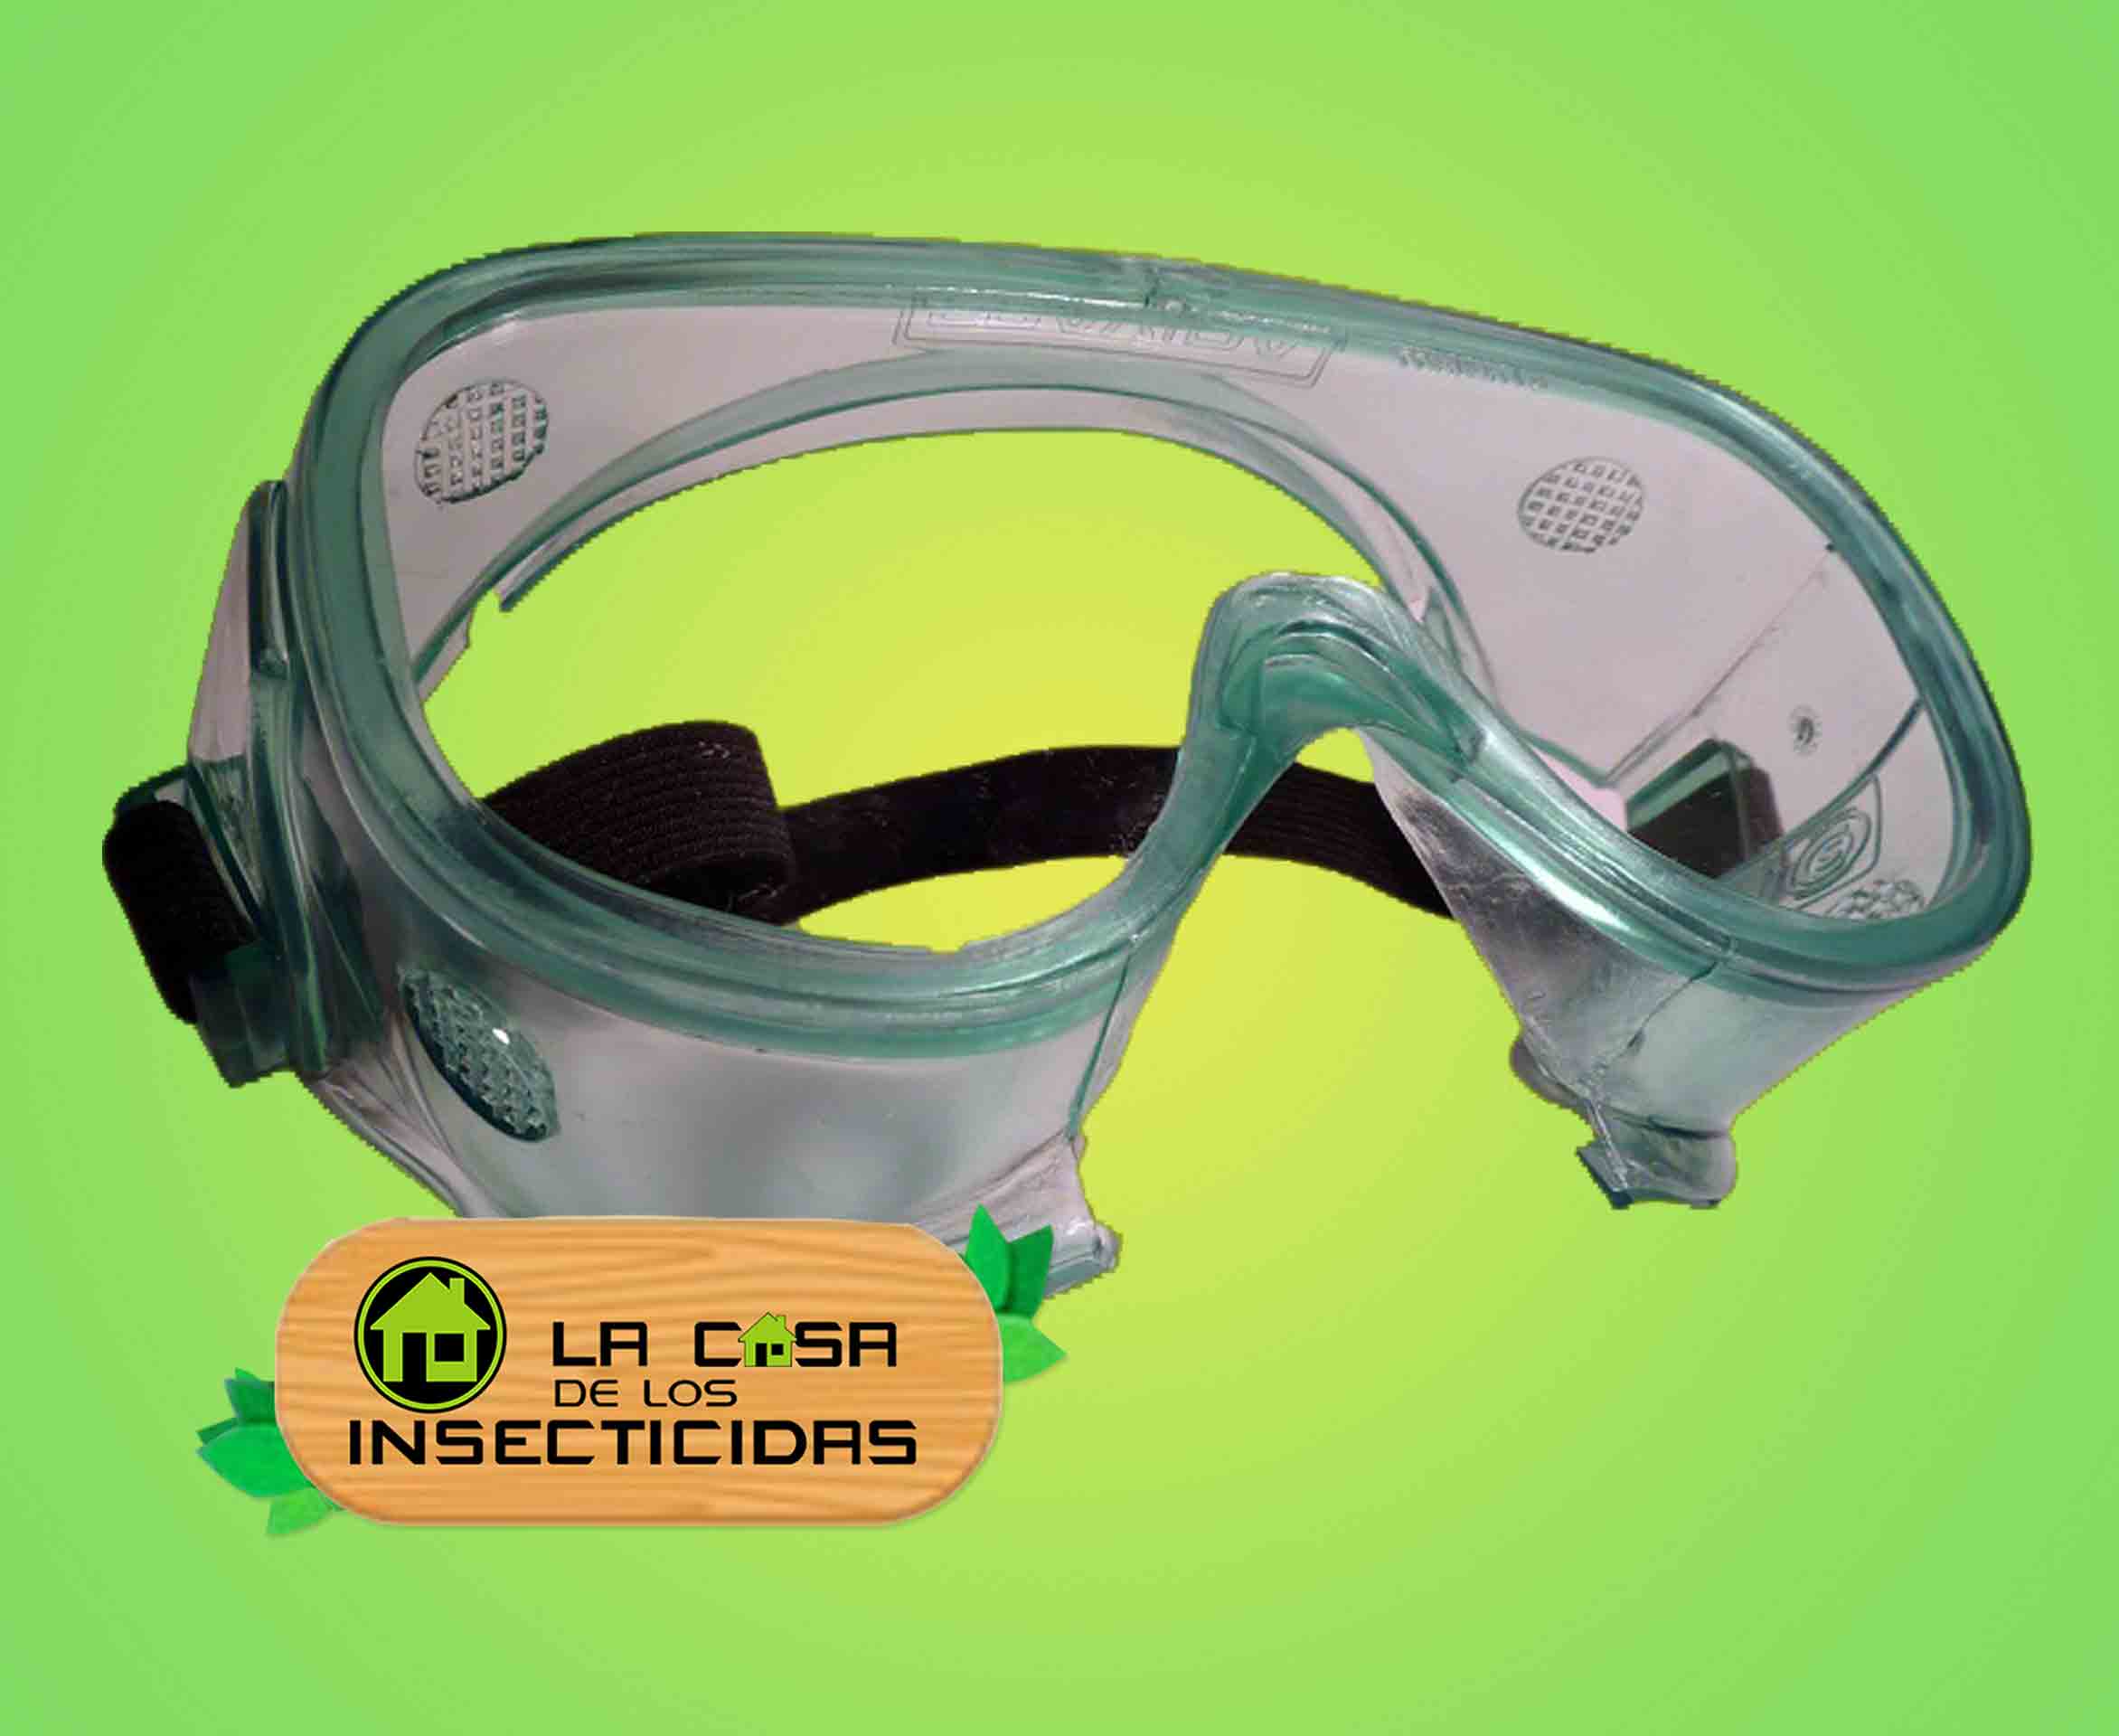 Protector ocular para control de plagas y fumigación.